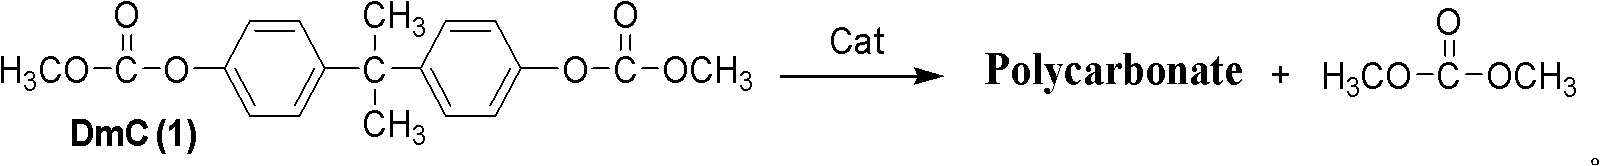 Preparation method of intermediate dimethoxy carbonic acid bisphenol A diester